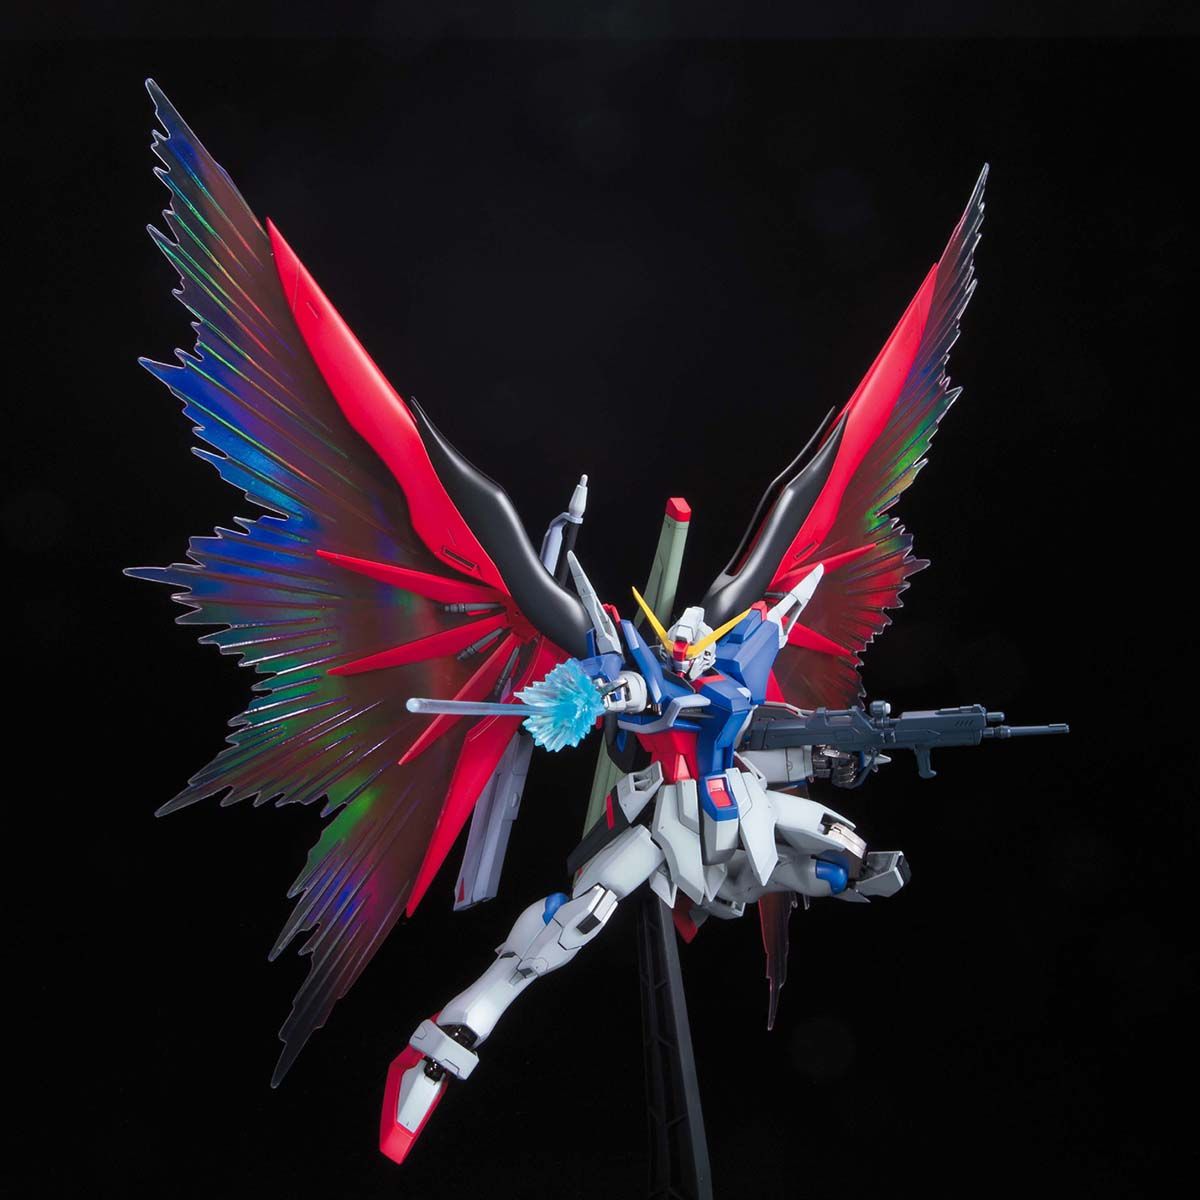 BANDAI Hobby MG Destiny Gundam Special Edition